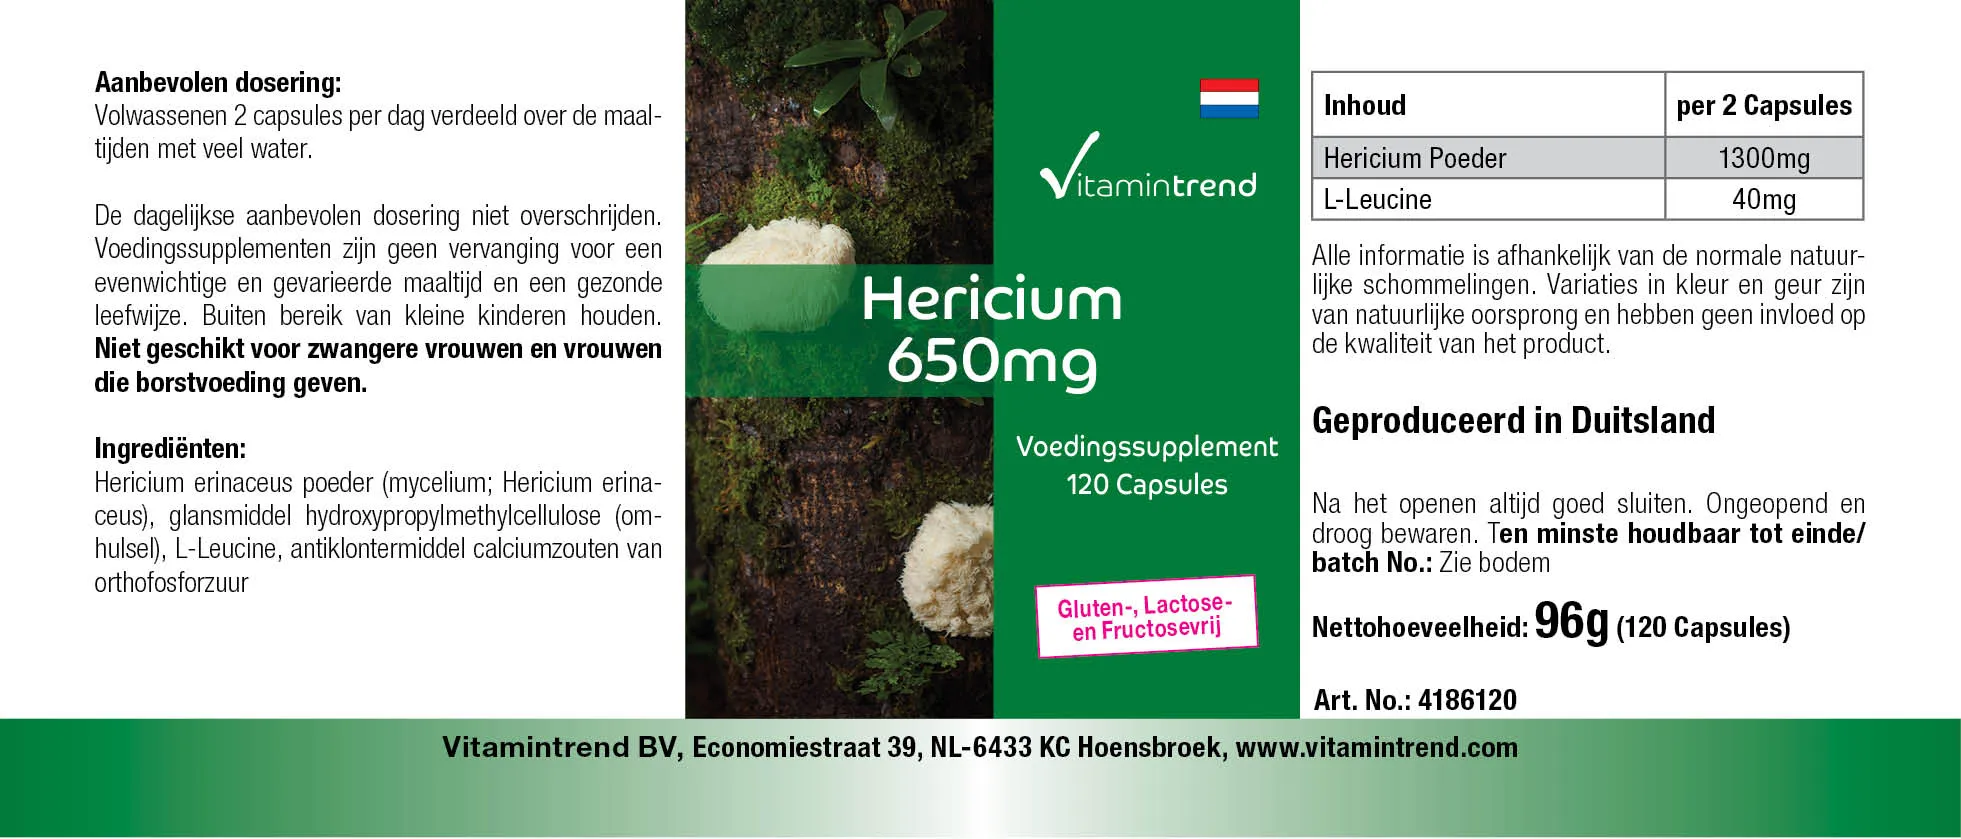 VT 4186120 Hericium 650mg  (183x65)(NL)